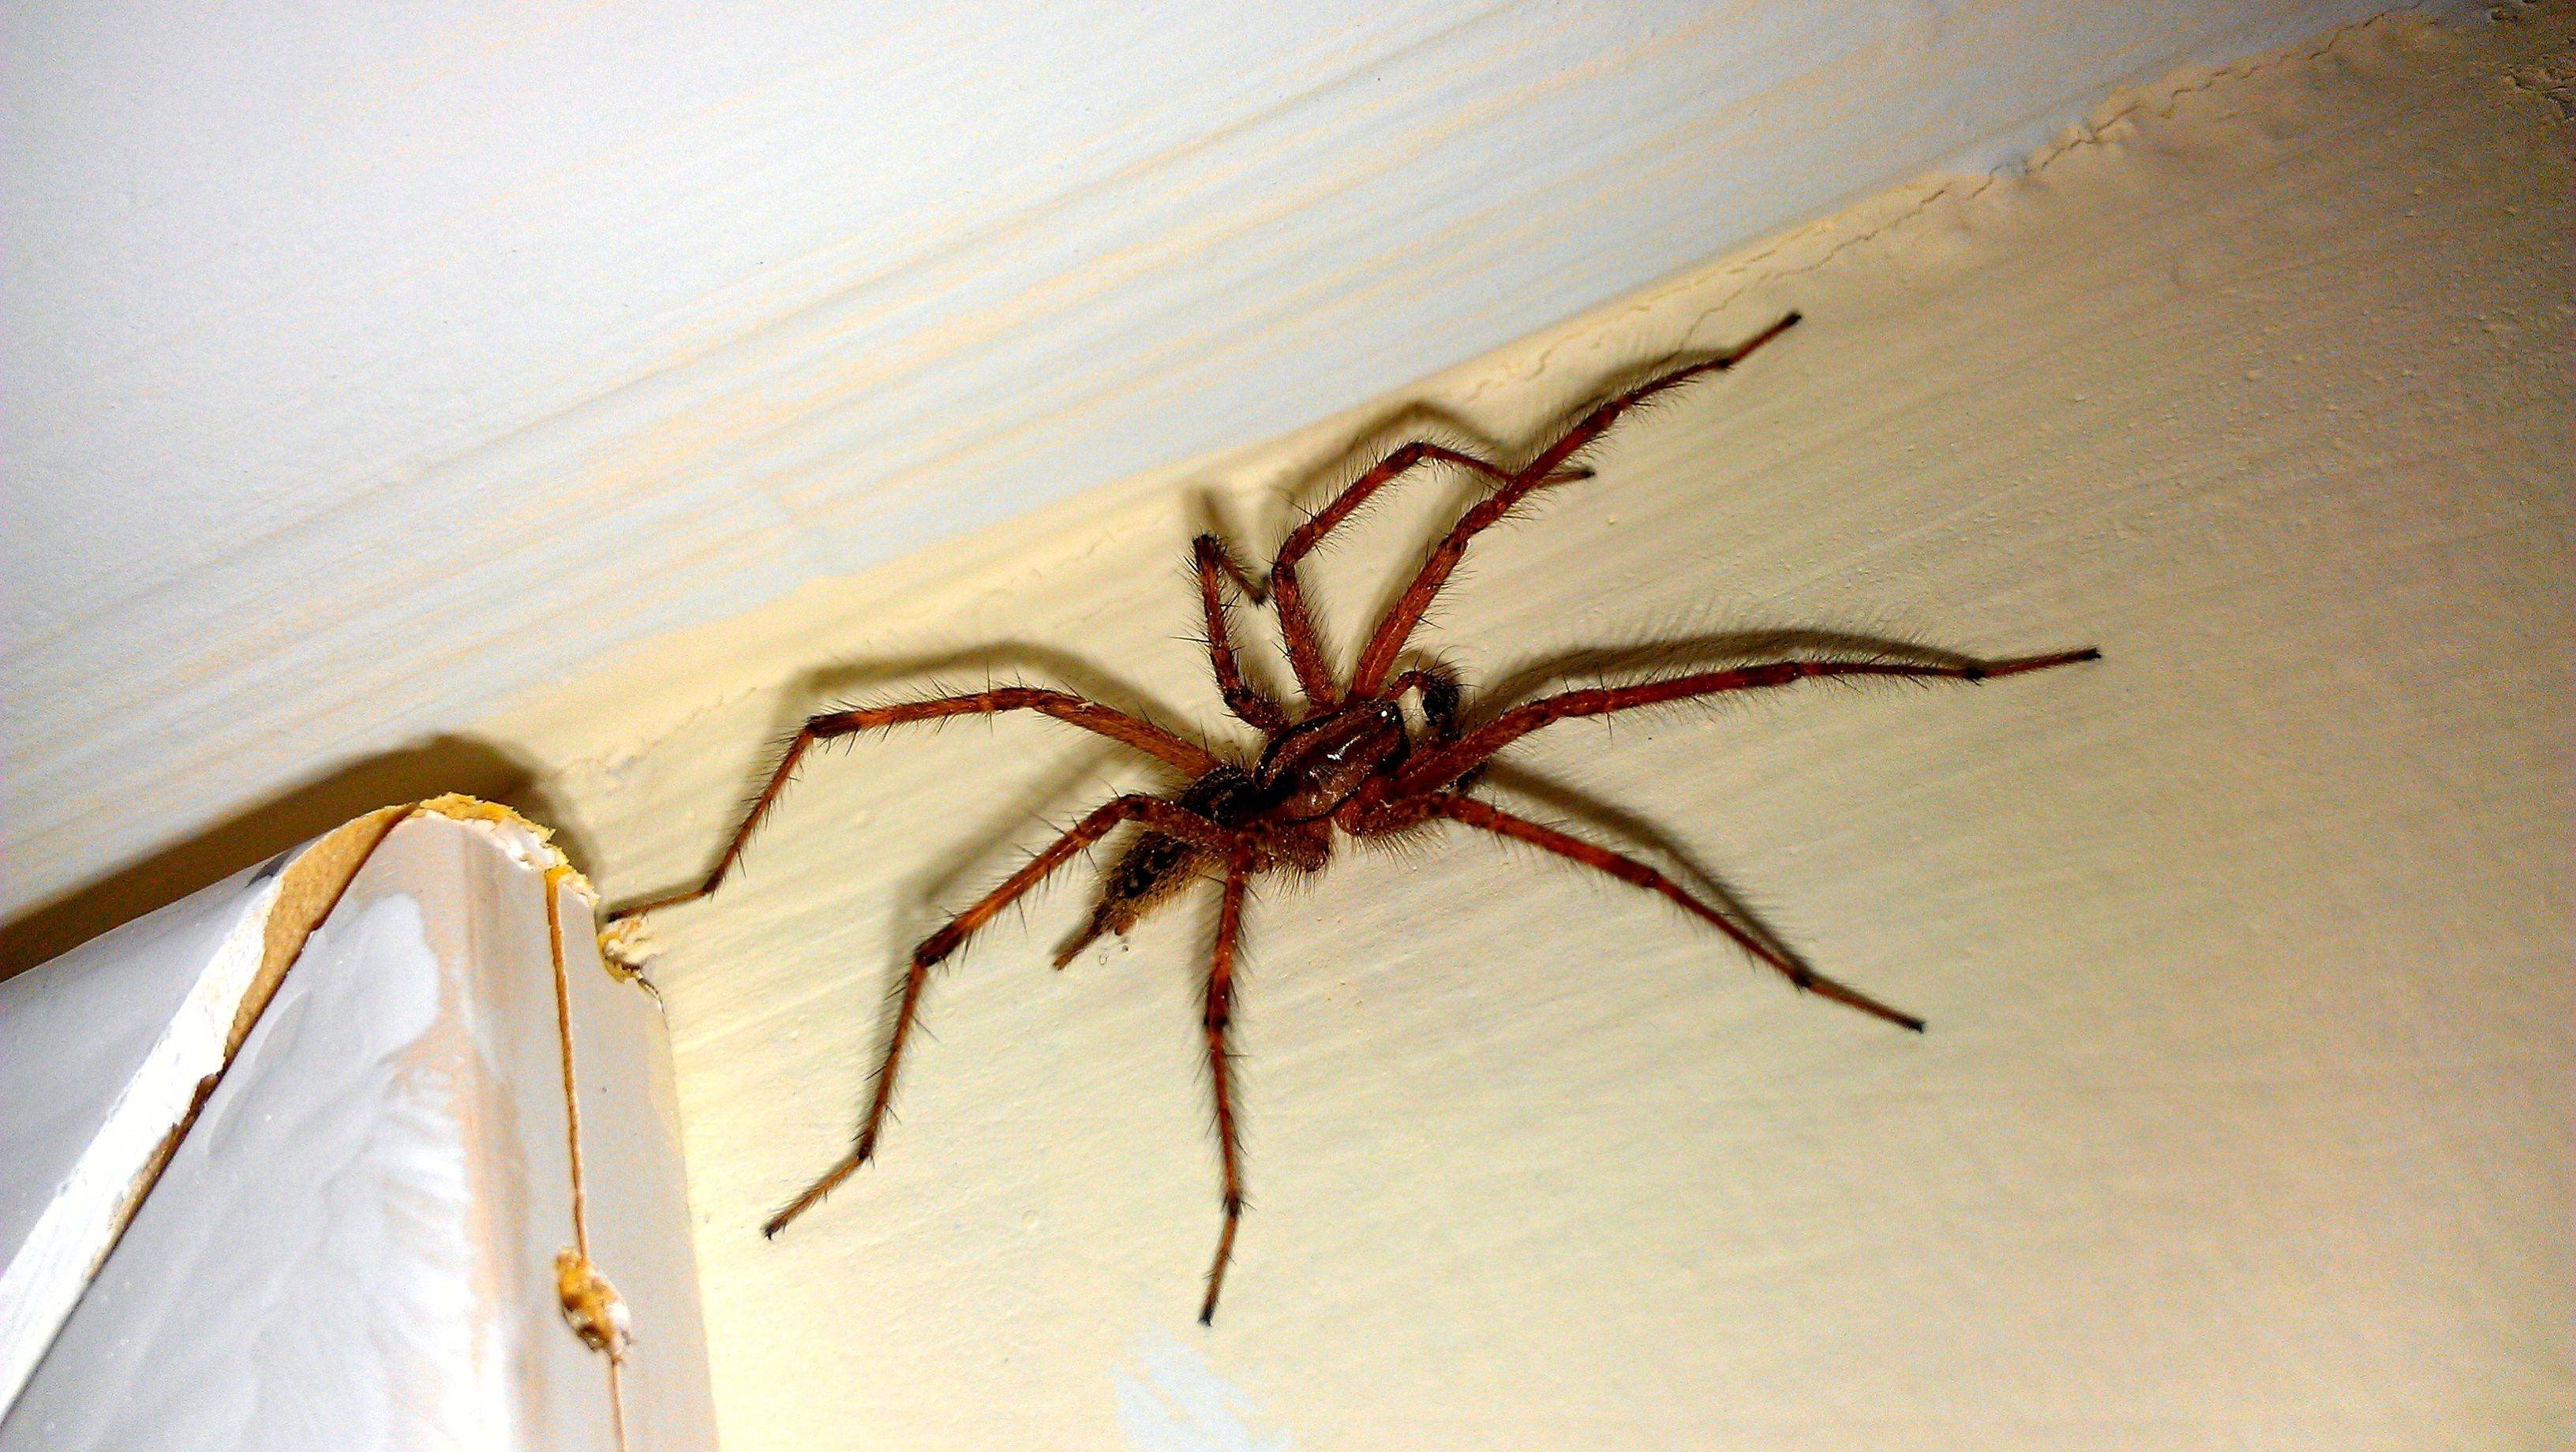 Домашний паук в квартире. Тегенария домовая. Паука Wendilgarda galapagensis. Паук Хантсмен Австралии. Огромные домашние пауки.